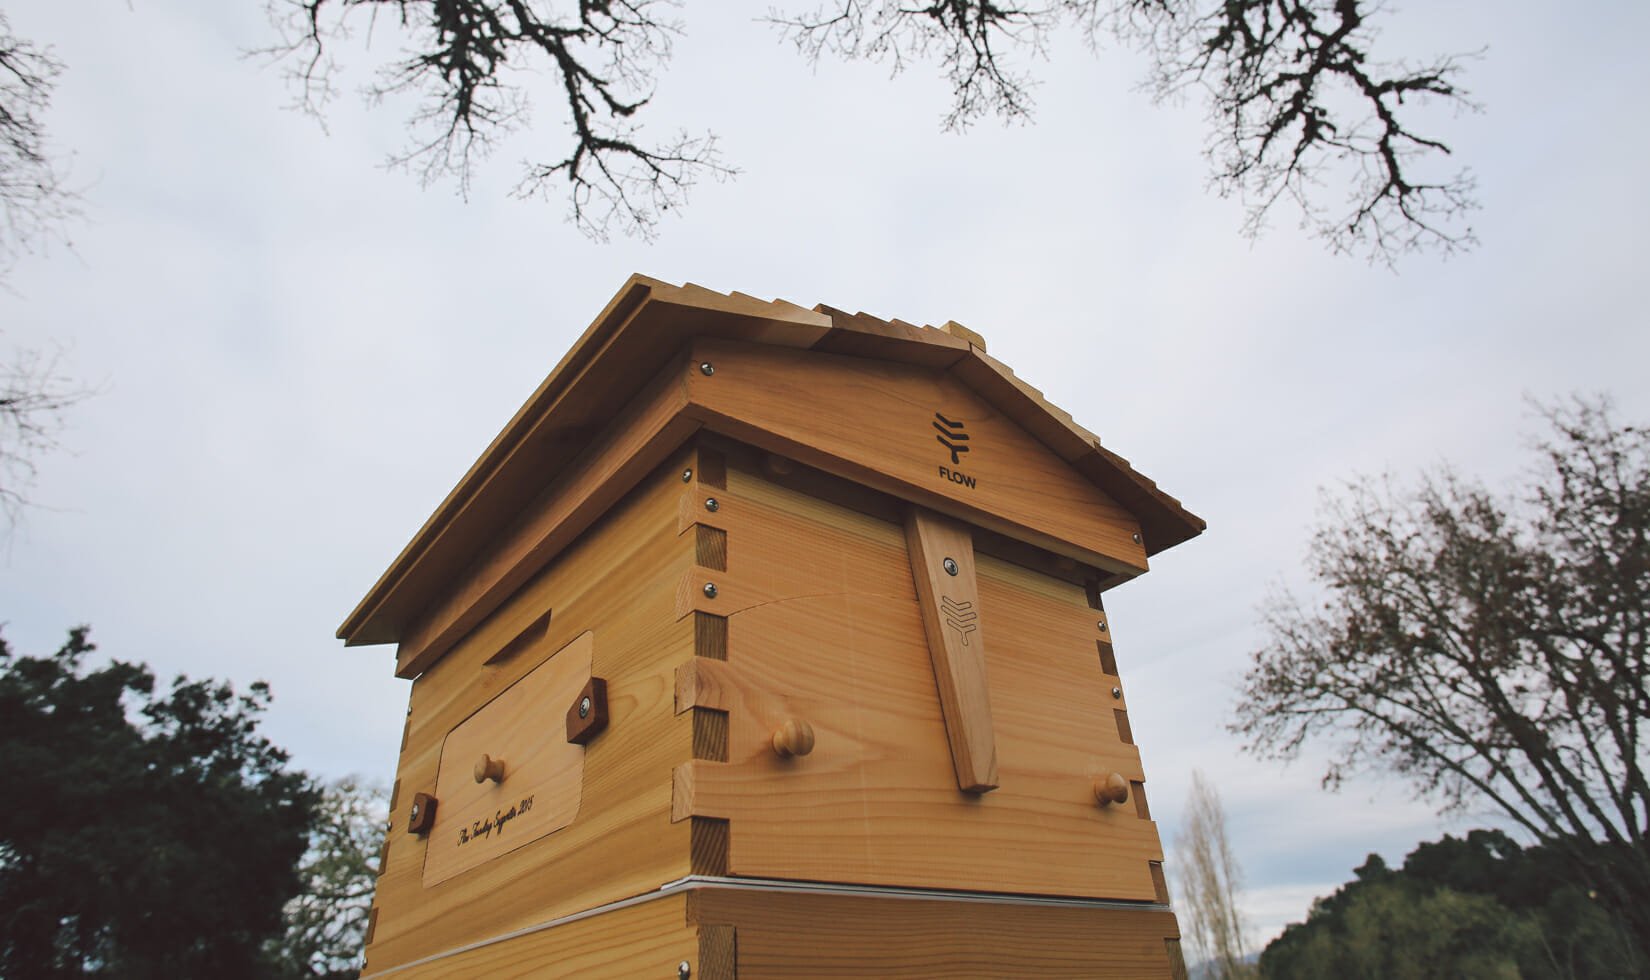 Jordan Winery Flow Hive beekeeping invention